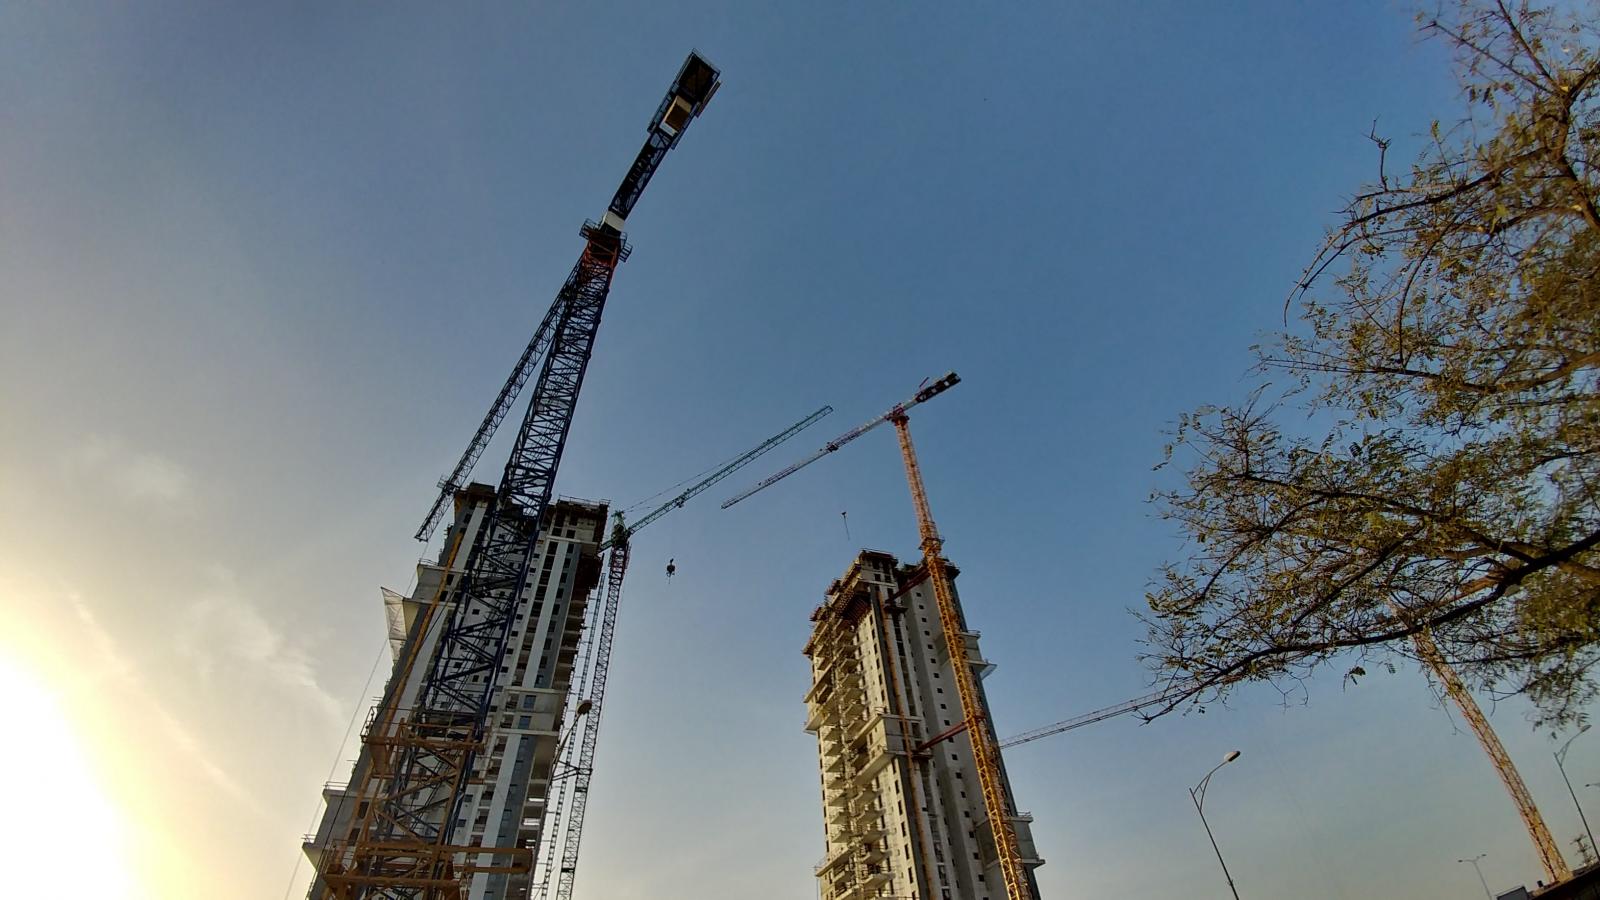 תנופת בניה בבאר שבע. ענף הבניה הוא קטר כלכלי מוביל בעיר (צילום: דני בלר)